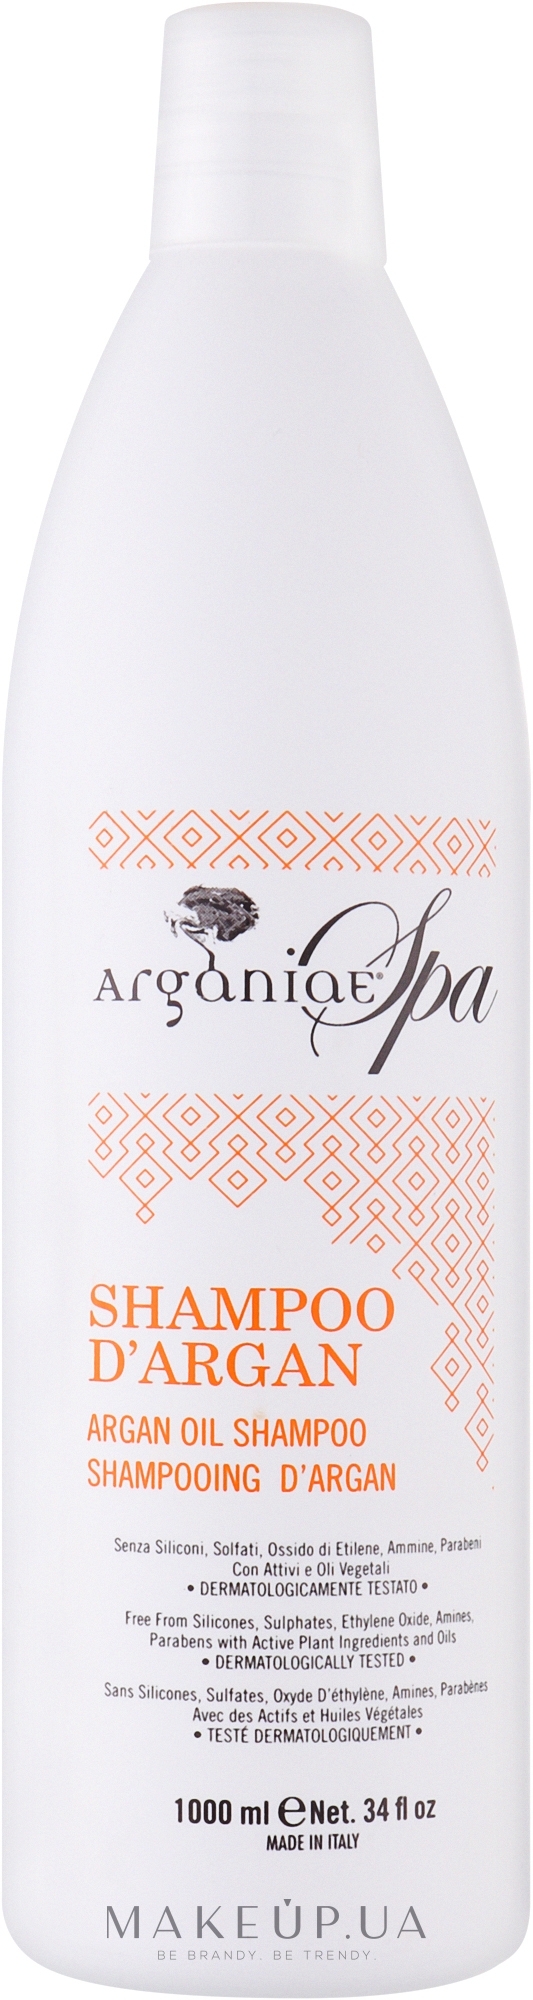 Шампунь для всех типов волос с аргановым маслом - Arganiae Spa Argan Oil Shampoo — фото 1000ml